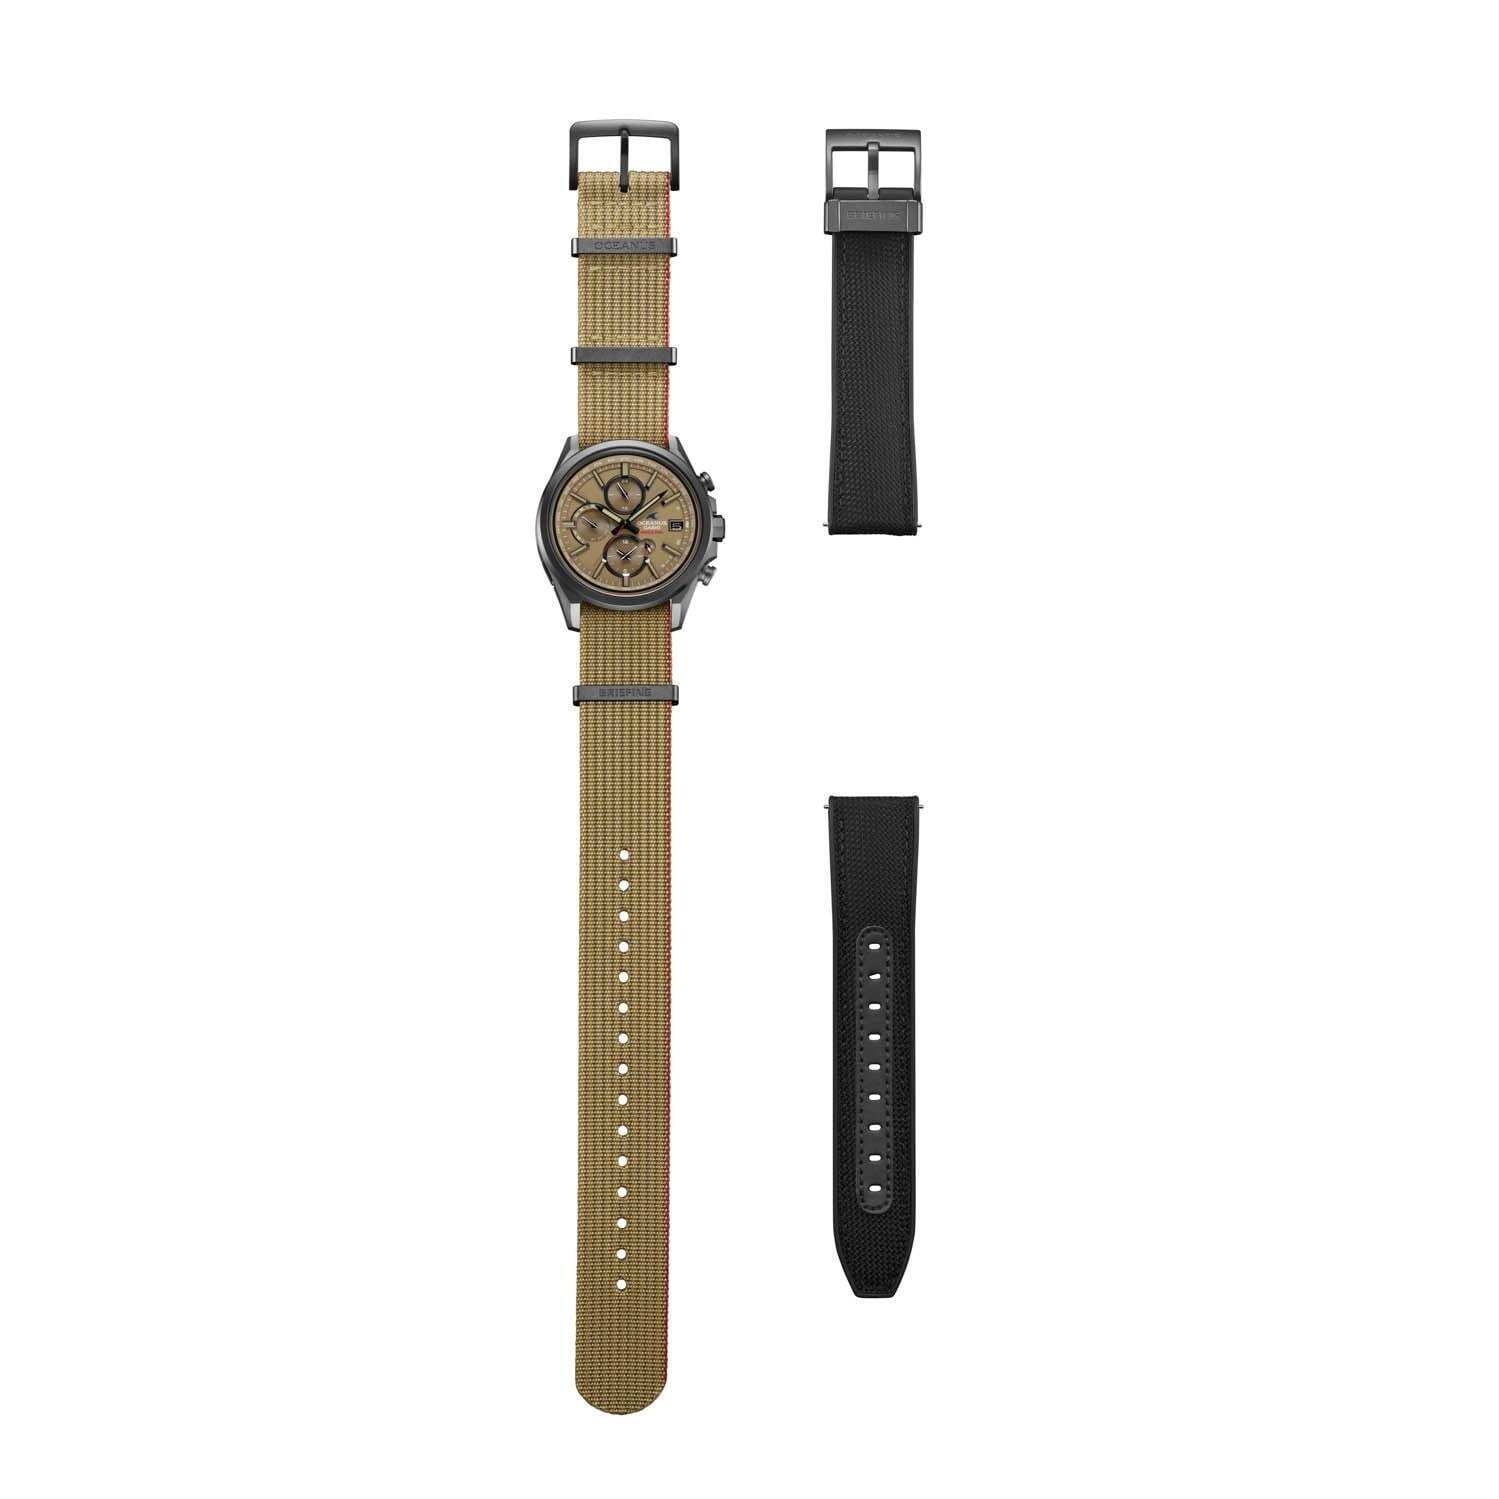 ブリーフィング×カシオ「オシアナス」“コヨーテカラー”の腕時計、高